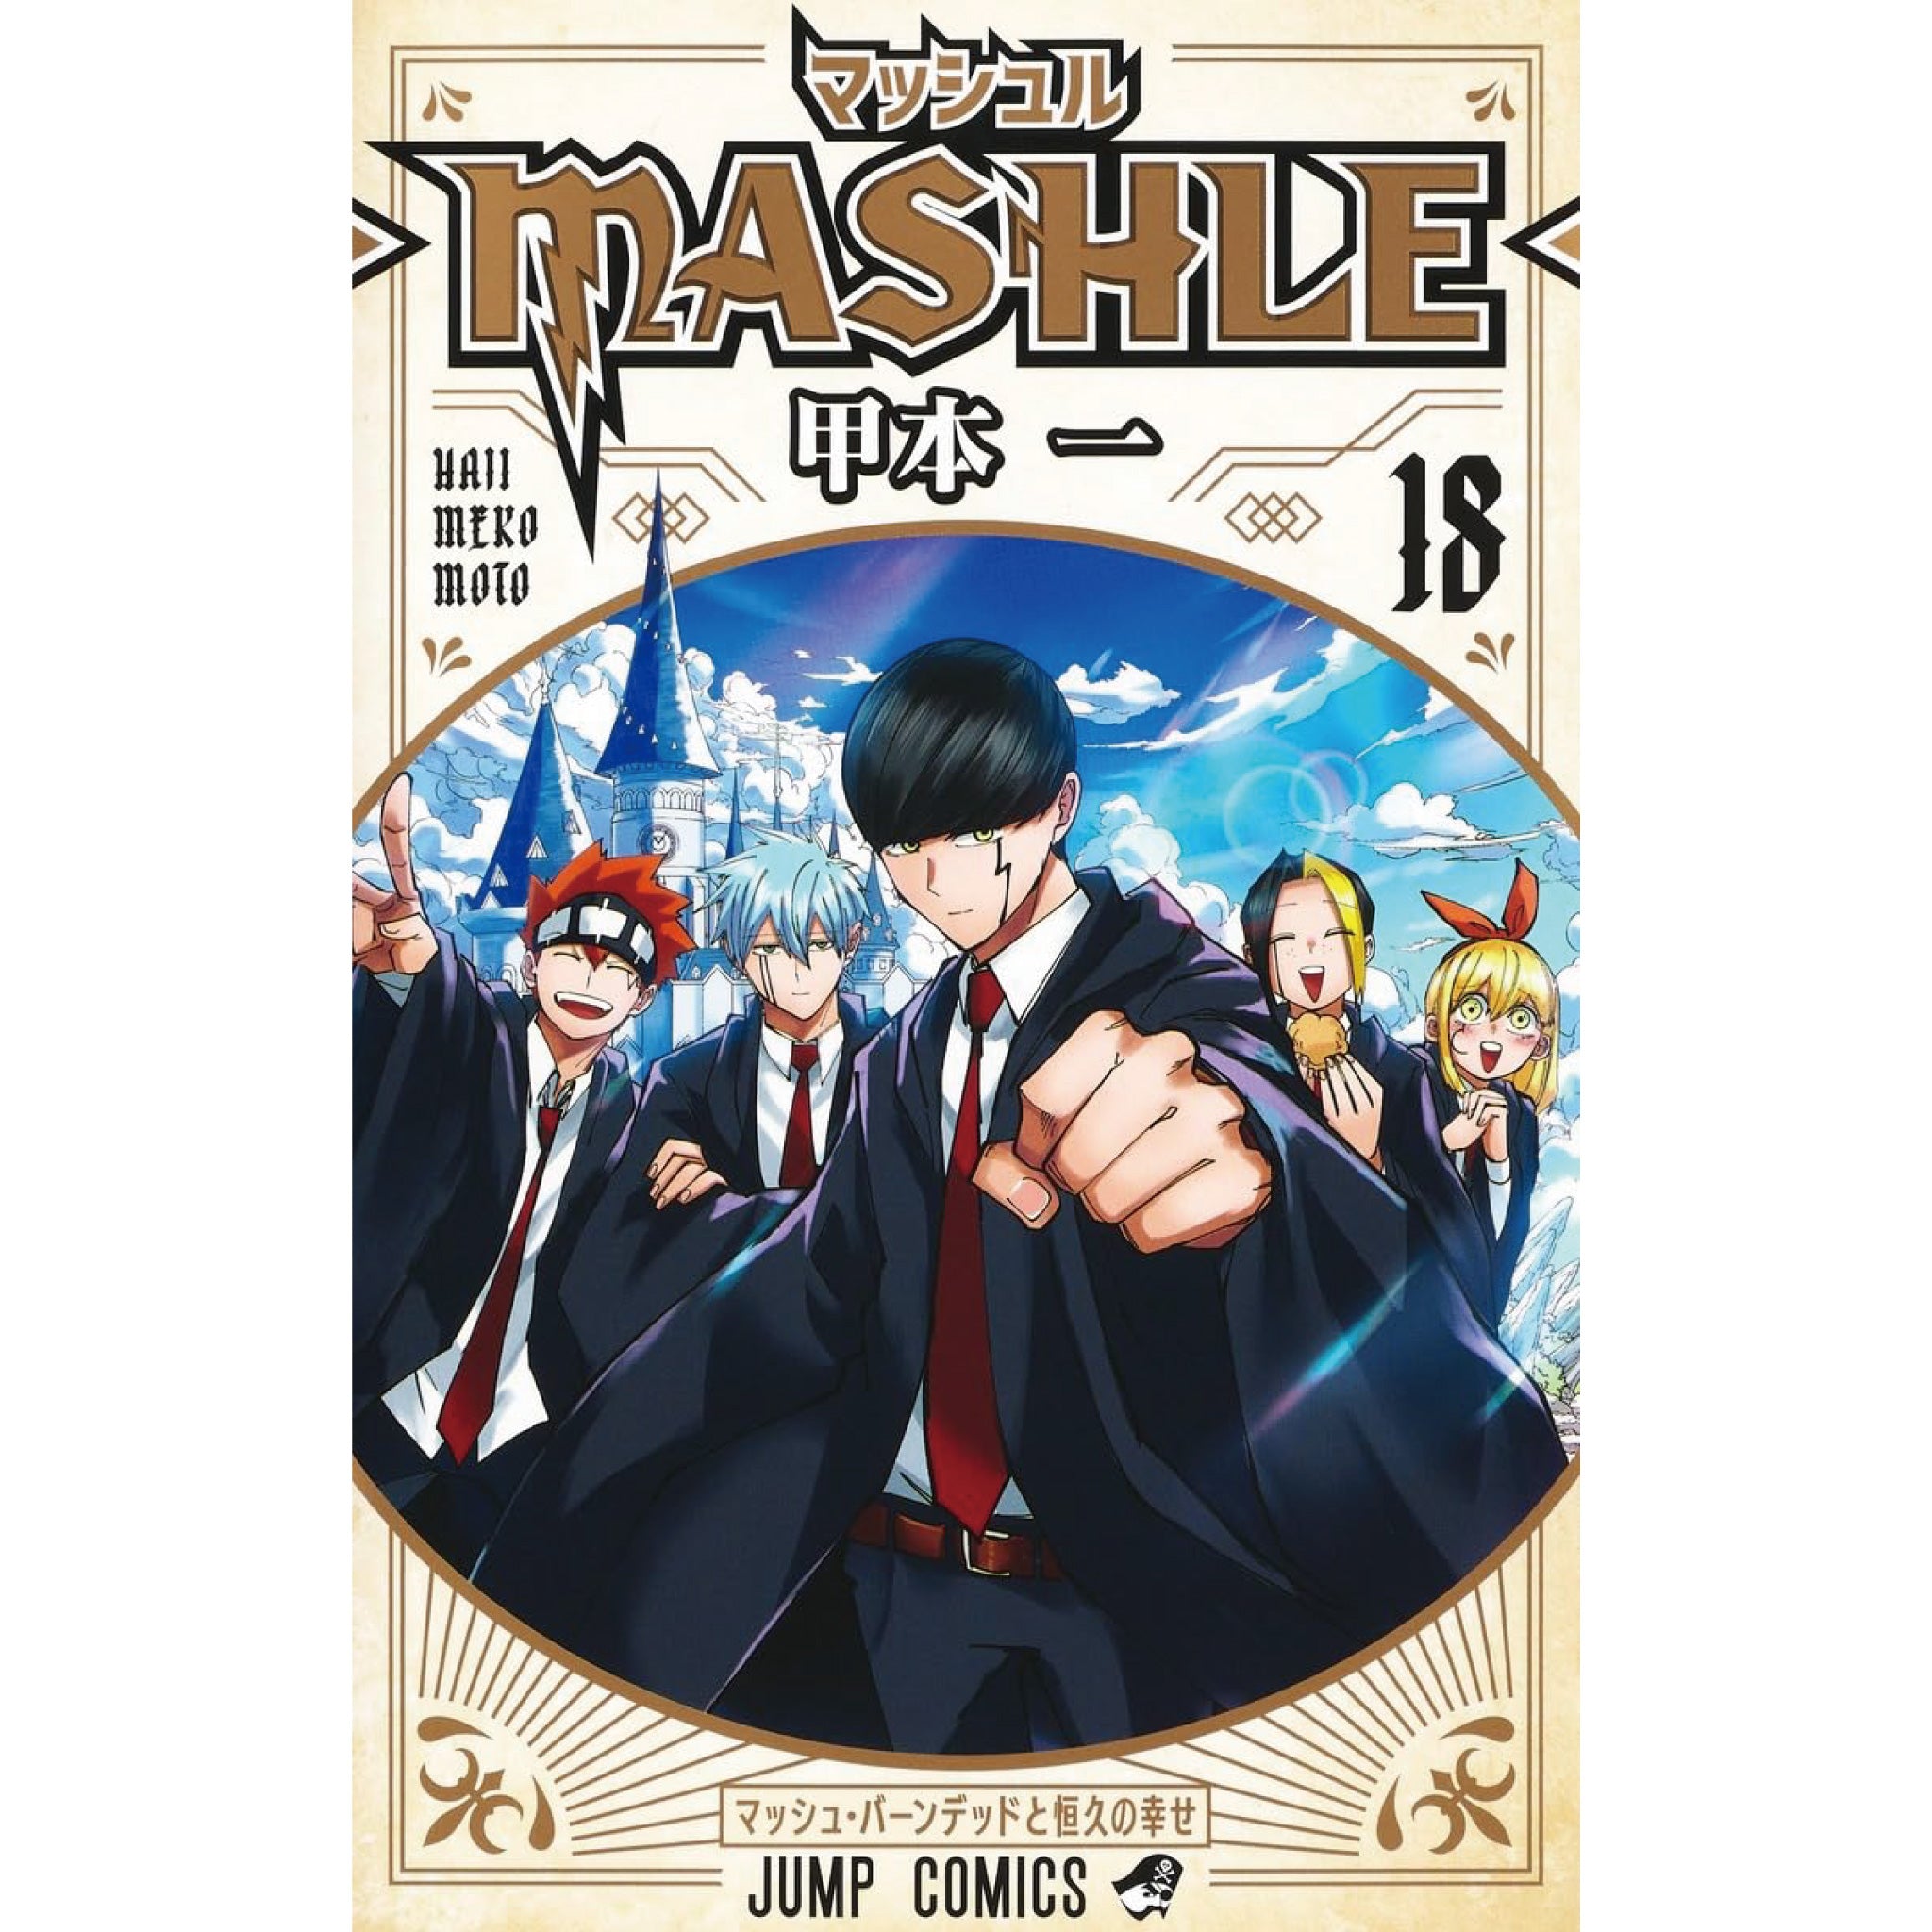 マッシュル-MASHLE- 全巻セット 全18巻 甲本一 八文字屋 